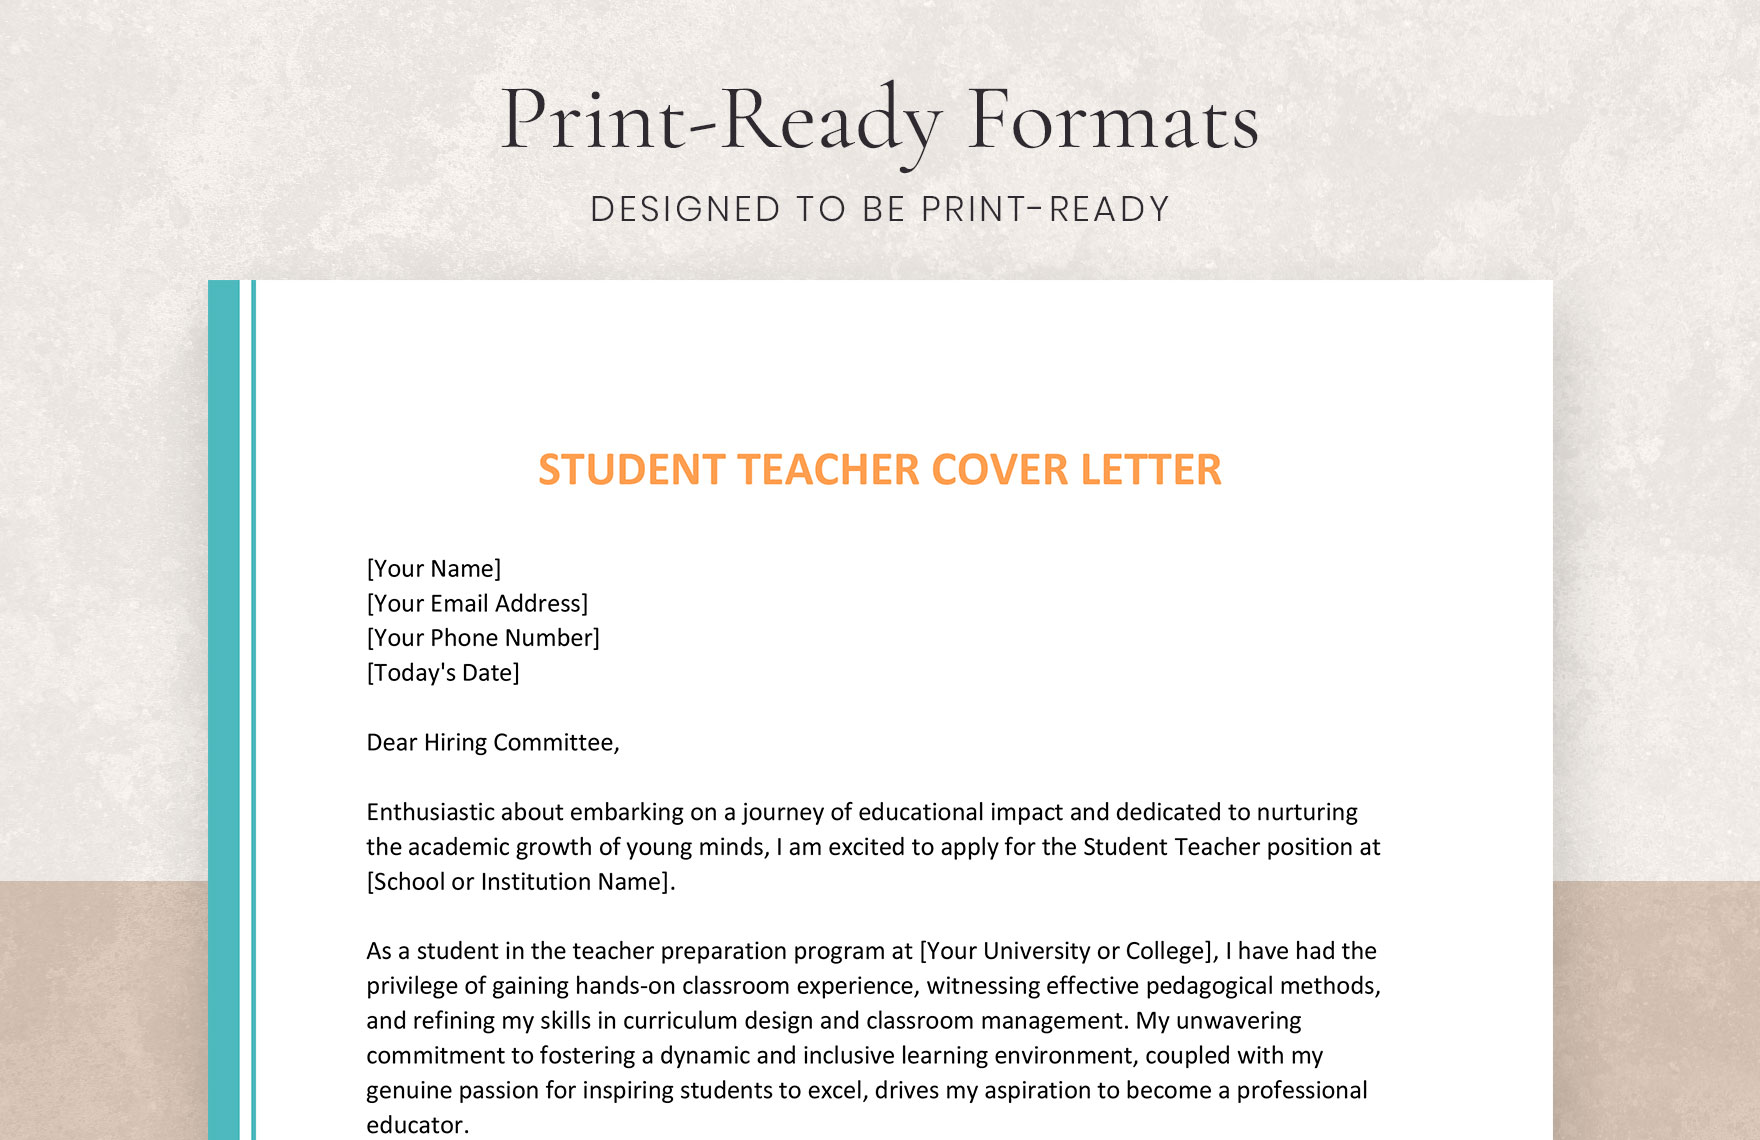 Student Teacher Cover Letter